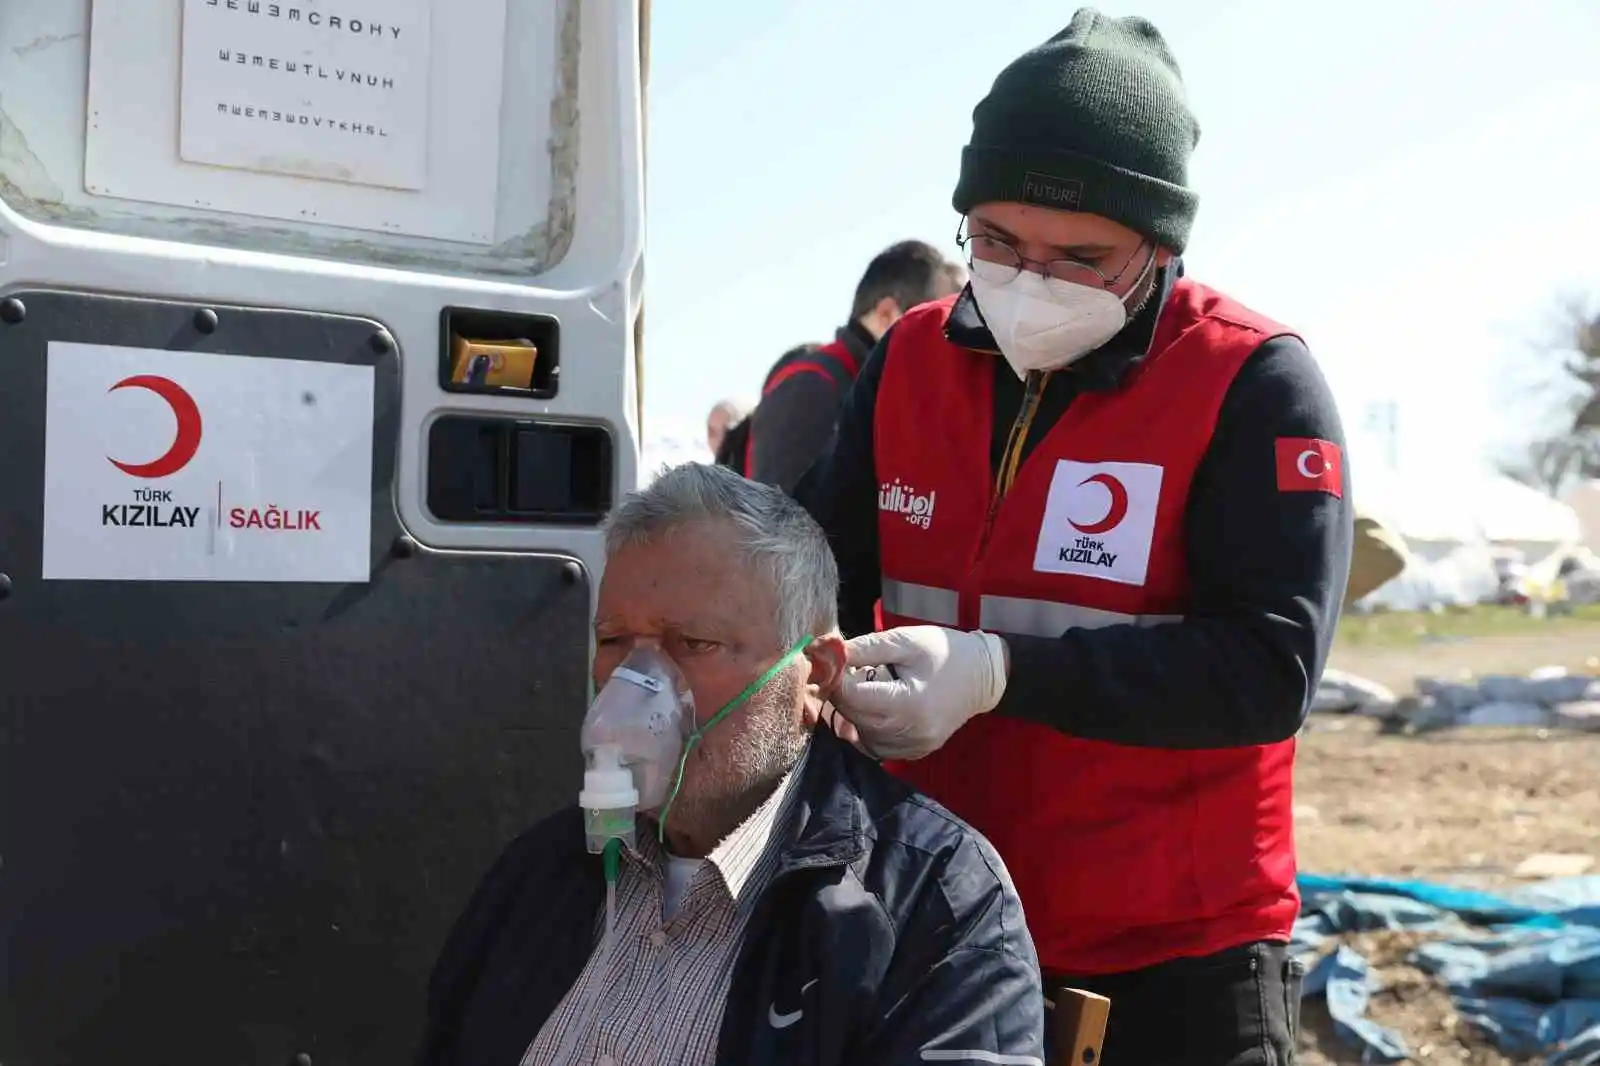 Kızılay mobil sağlık araçları ilk gün 600’den fazla depremzedeye ulaştı
